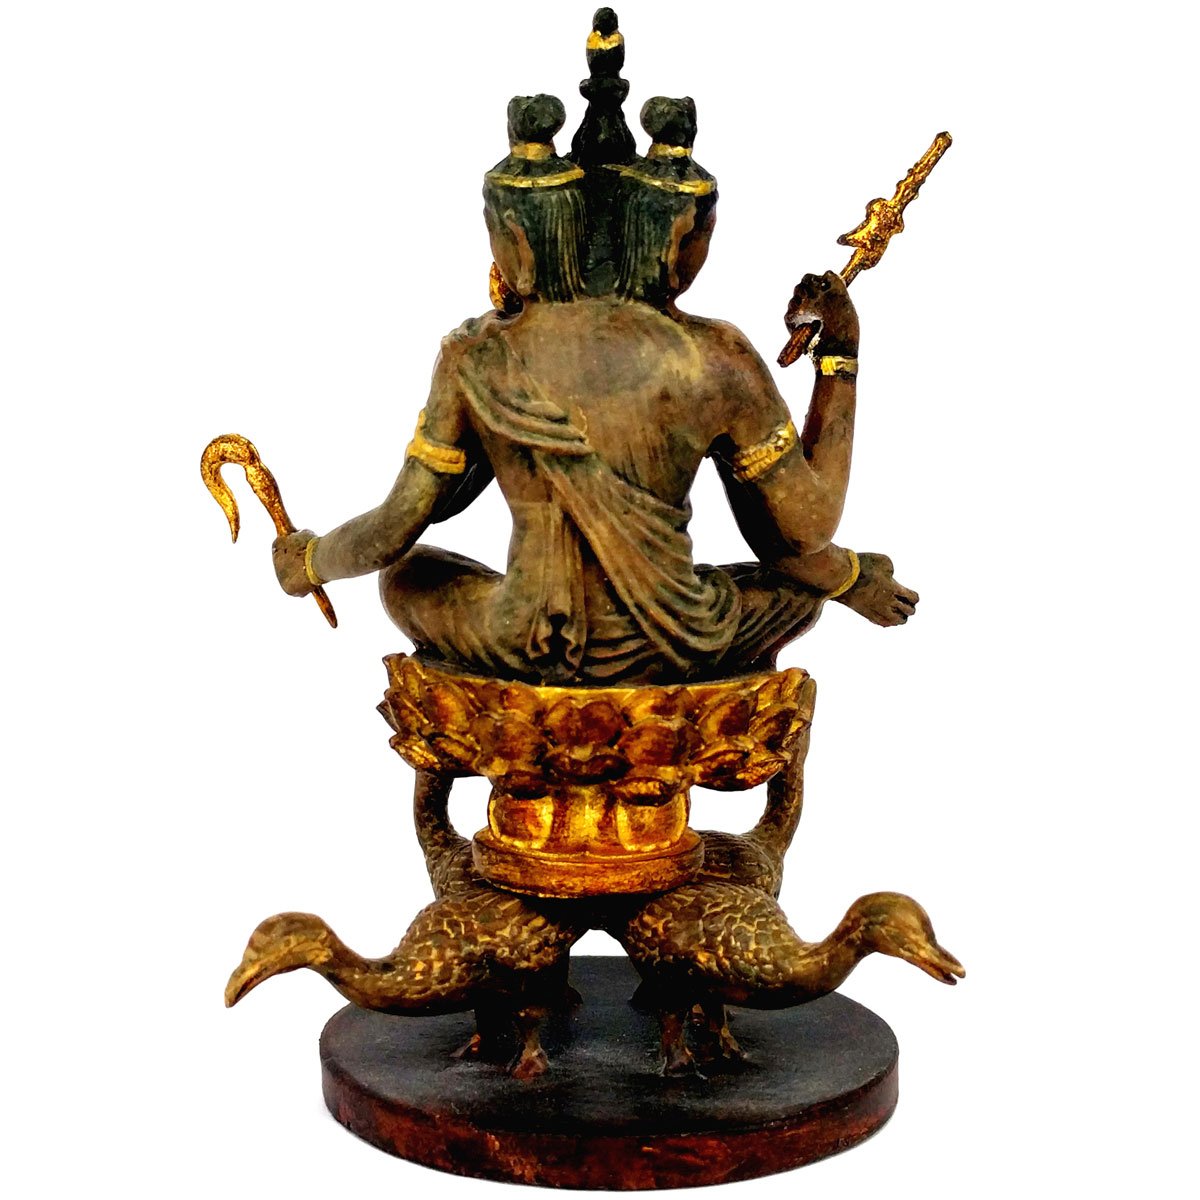 100％品質 東寺監修 公認 国宝 梵天 ミニチュア仏像 彫刻/オブジェクト